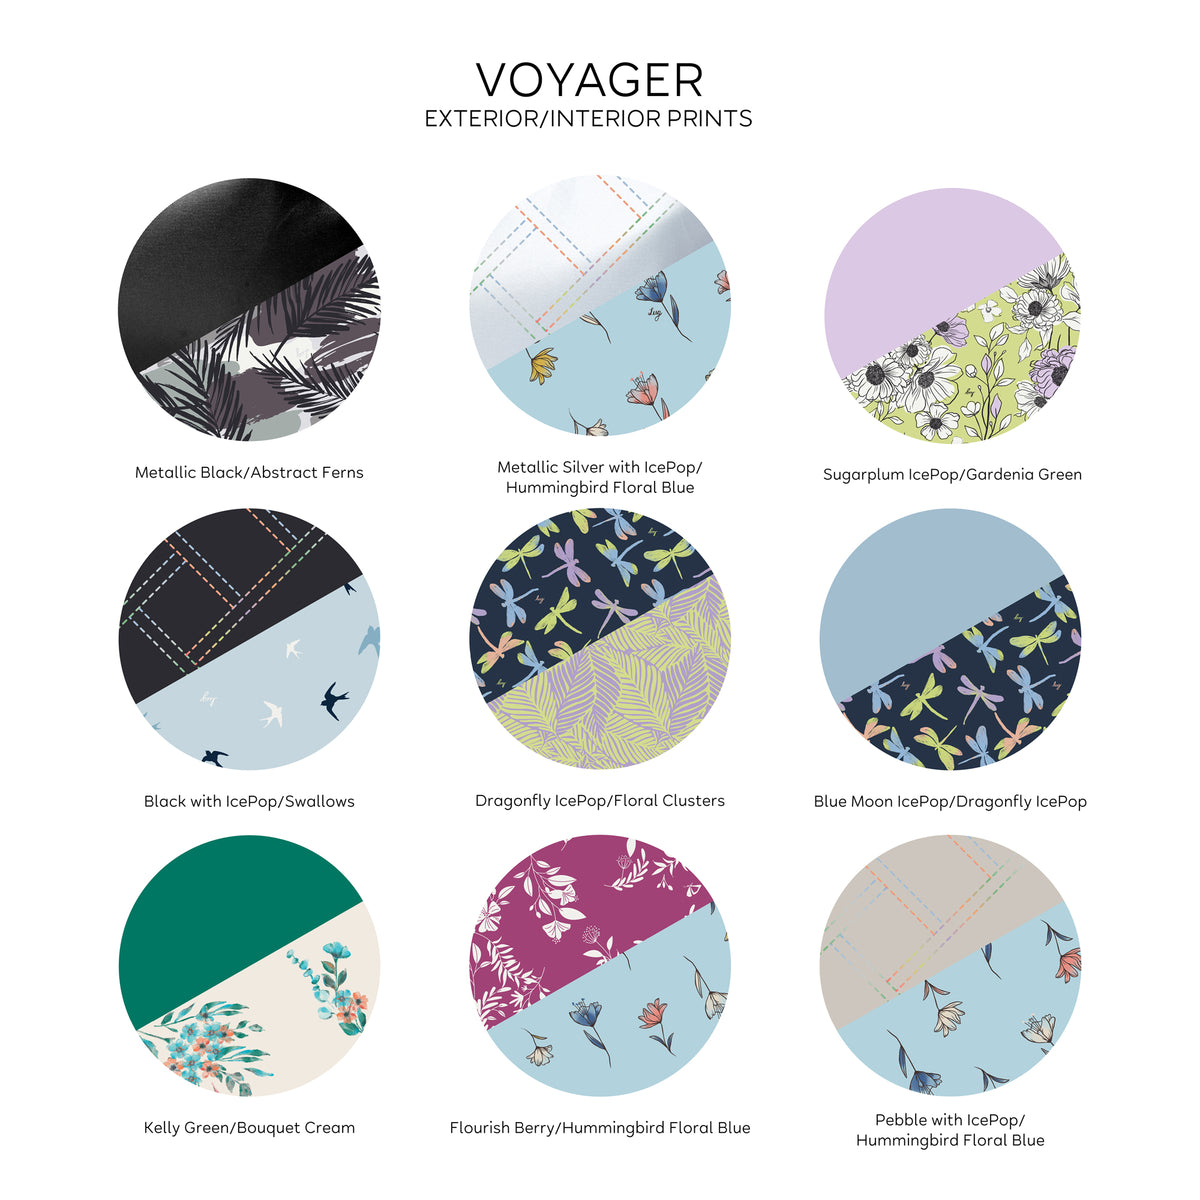 Voyager Backpack